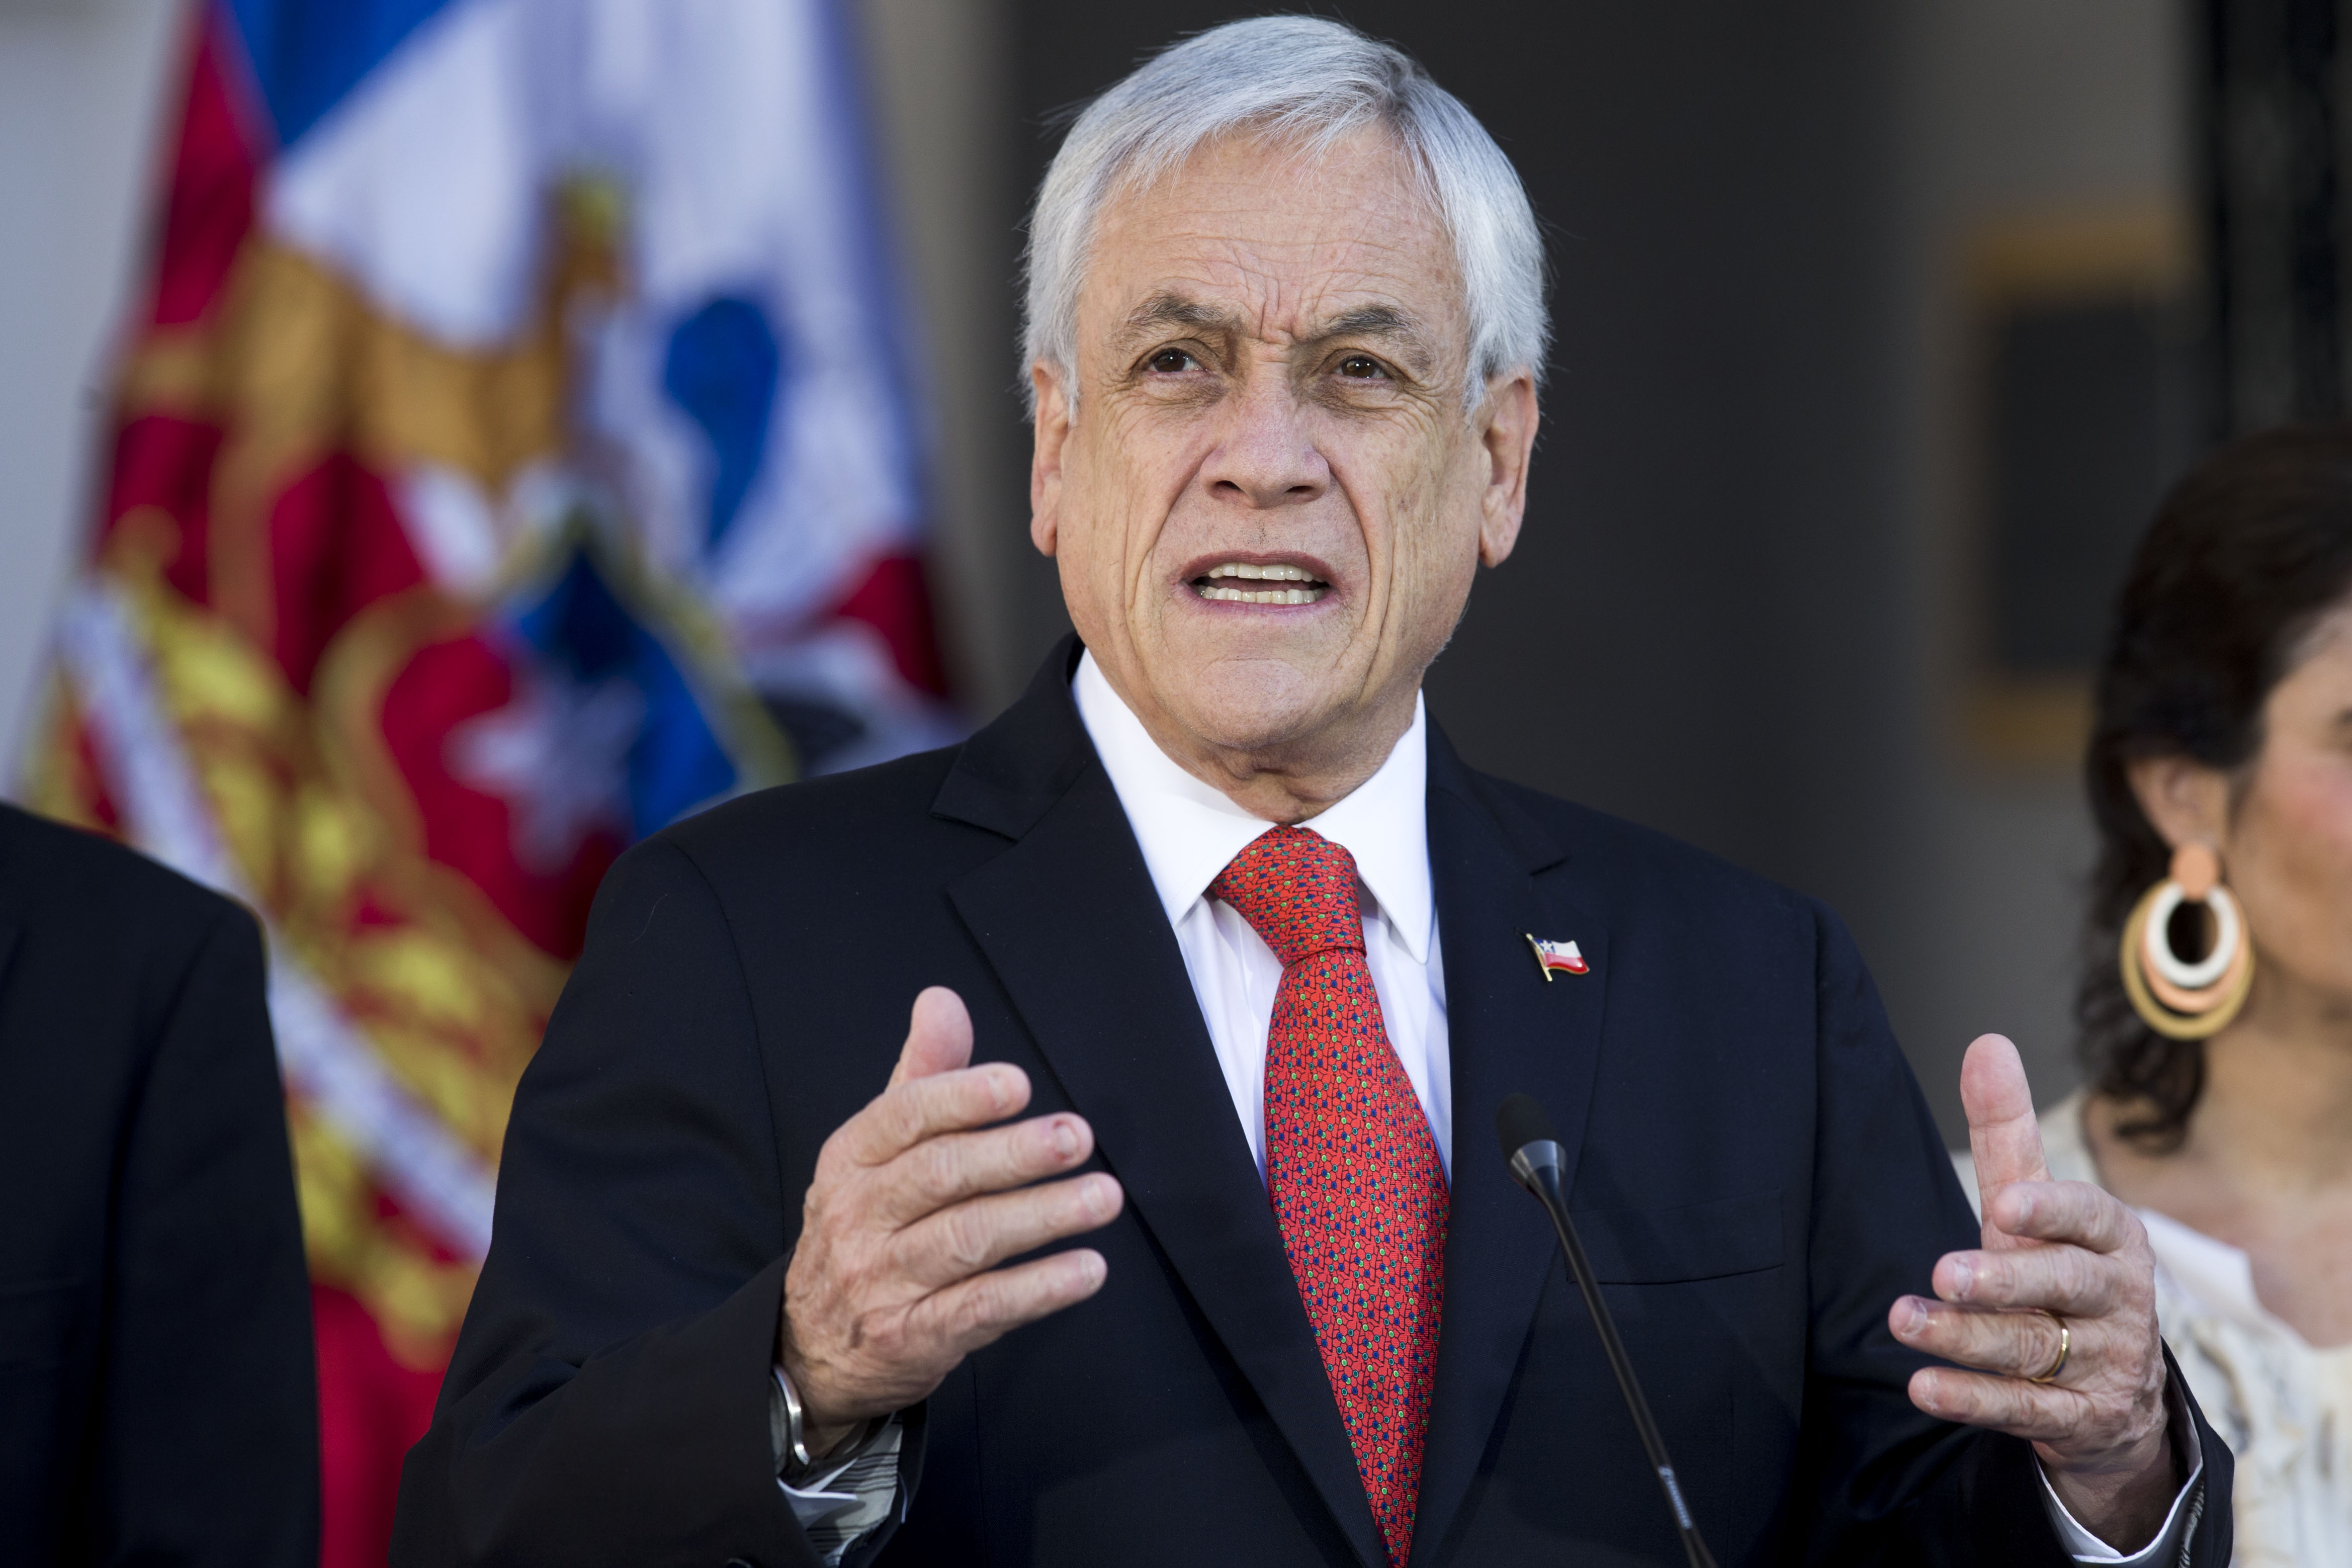 Sebastián Piñera: Démosle un ejemplo al mundo entero de cómo funciona la democracia en Chile